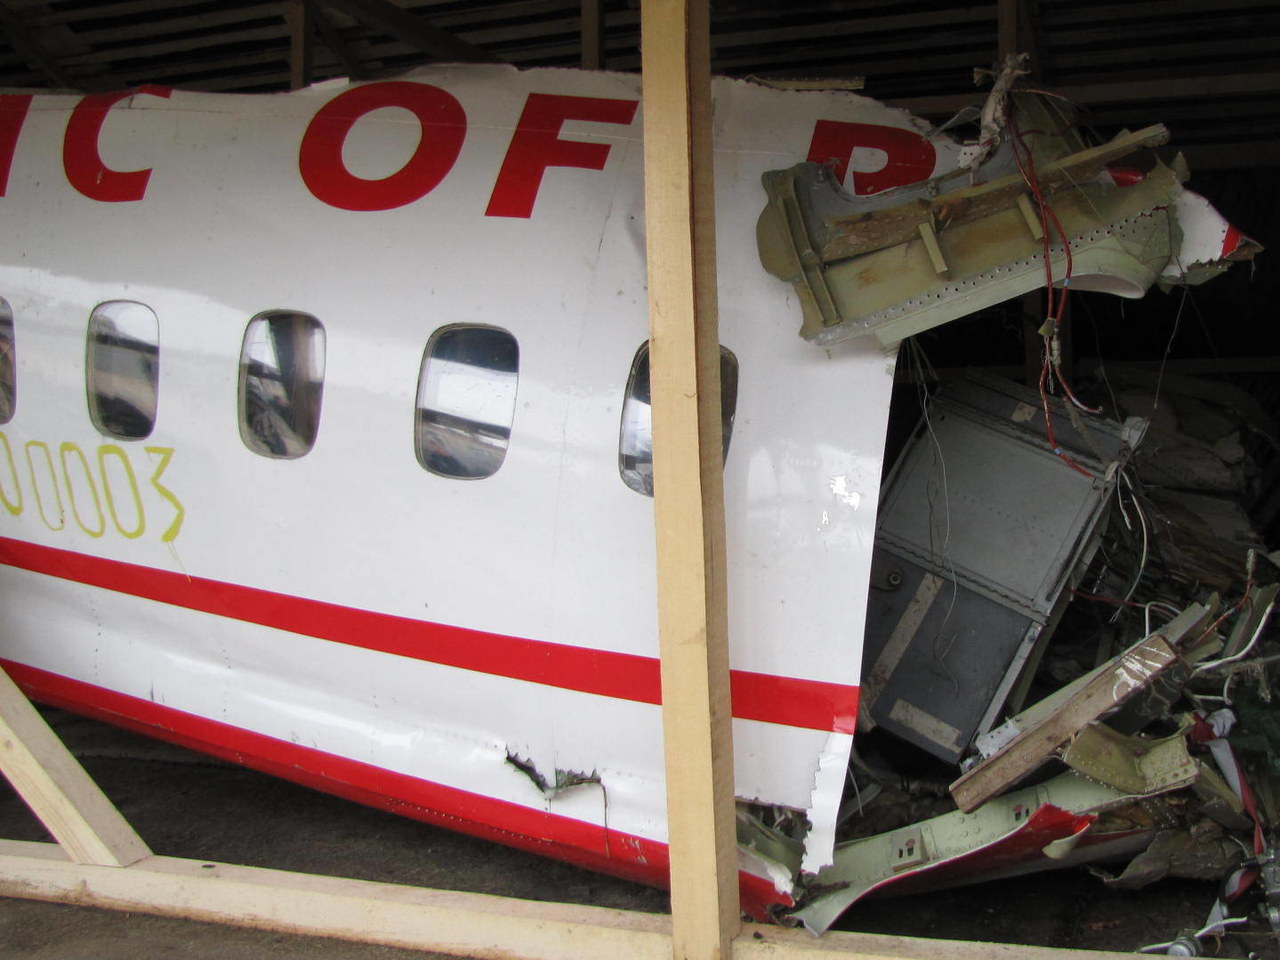 PK: Polscy śledczy nie uznali błędu pilotów za przyczynę katastrofy smoleńskiej